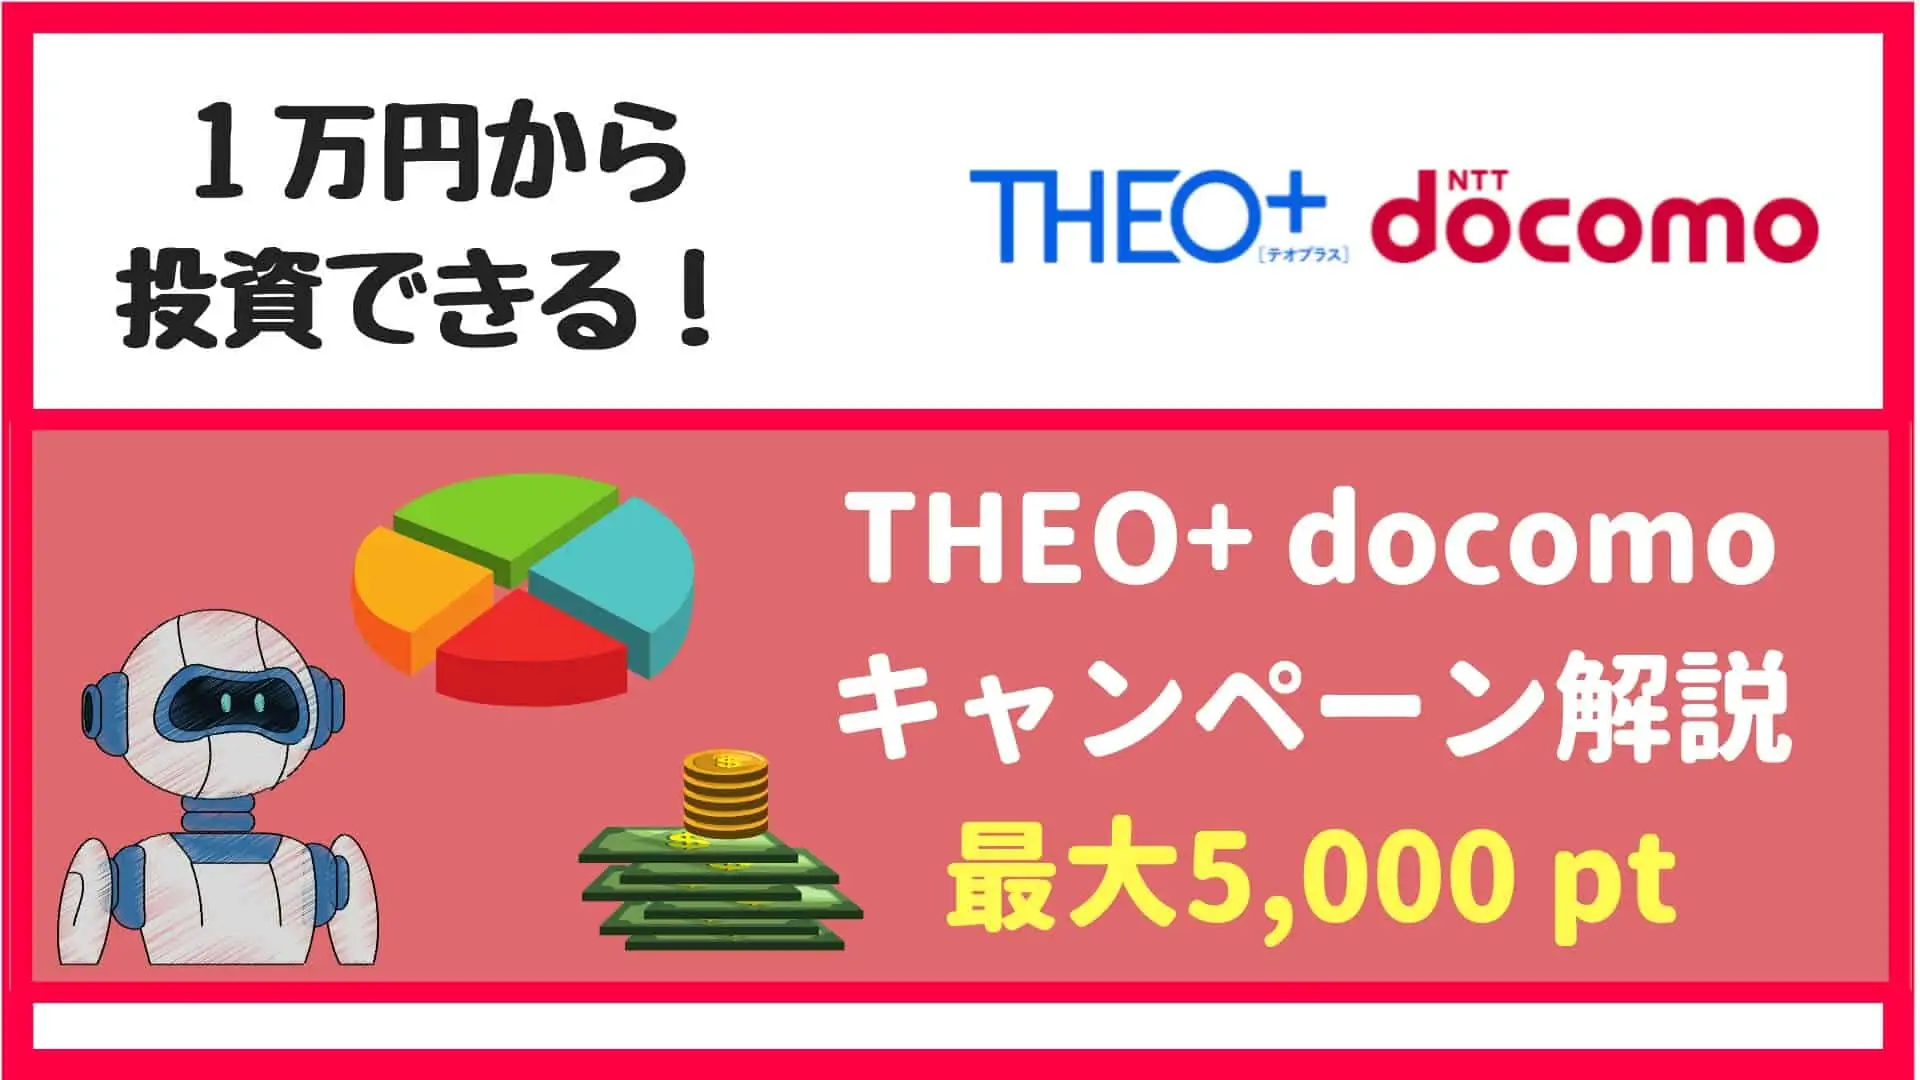 THEO+docomoキャンペーン【2019年6月】積立で5,000 dポイント(最大)が貰える